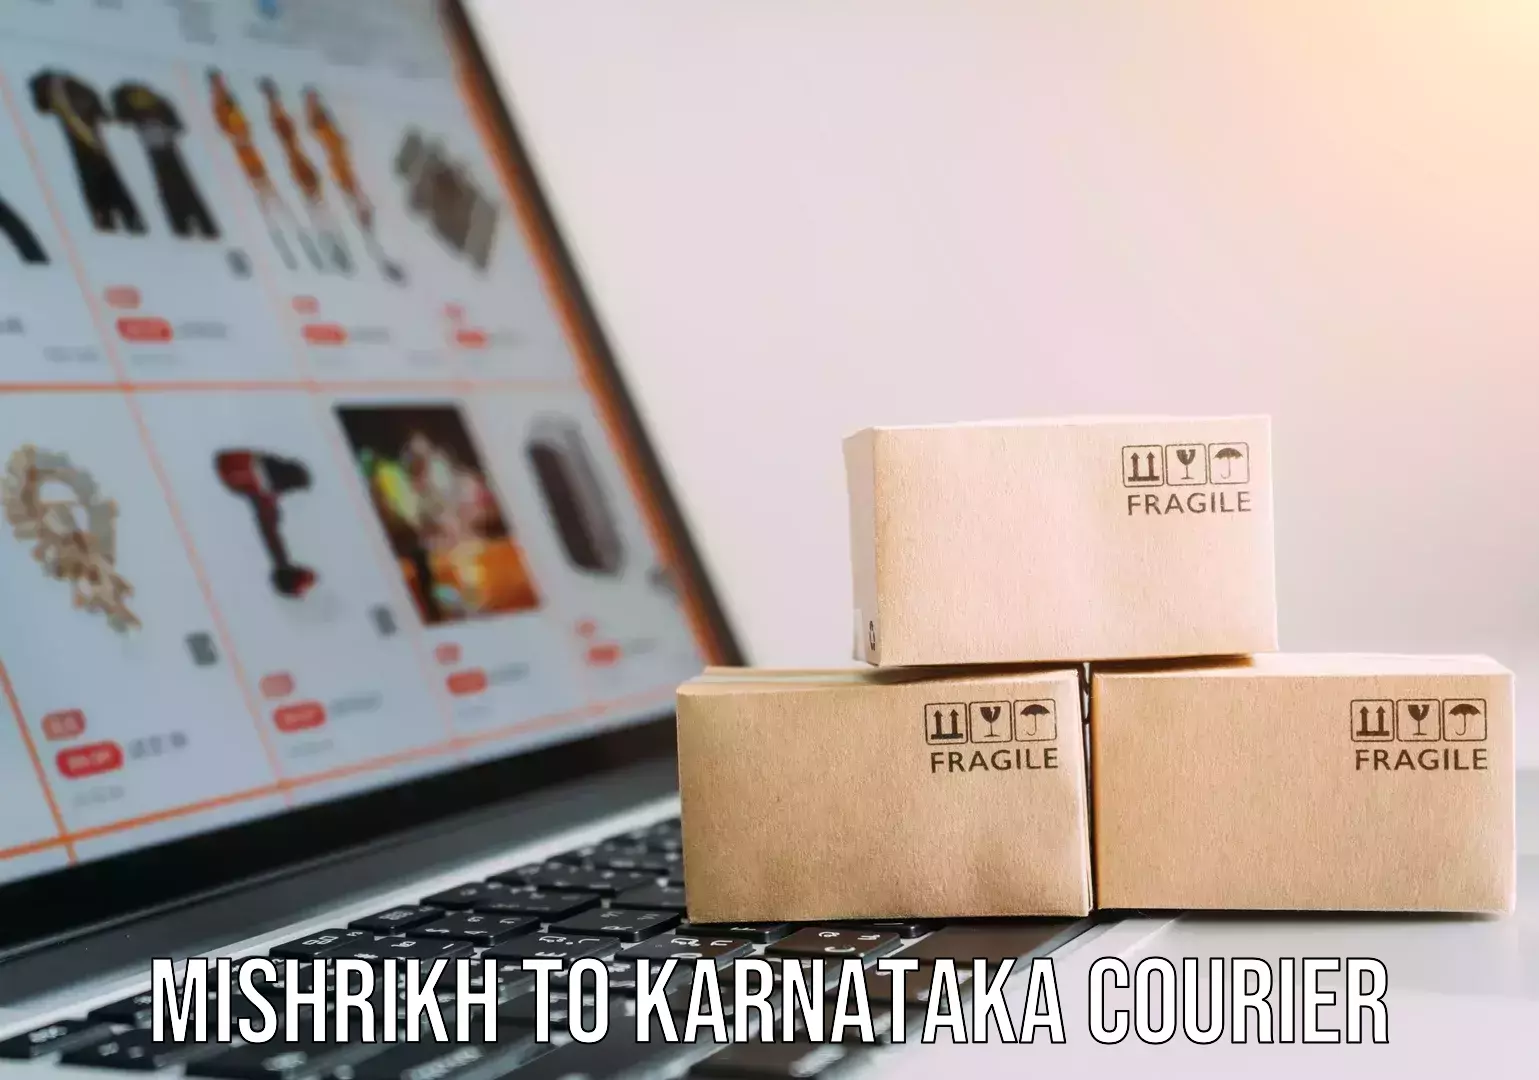 Furniture movers and packers Mishrikh to Karnataka